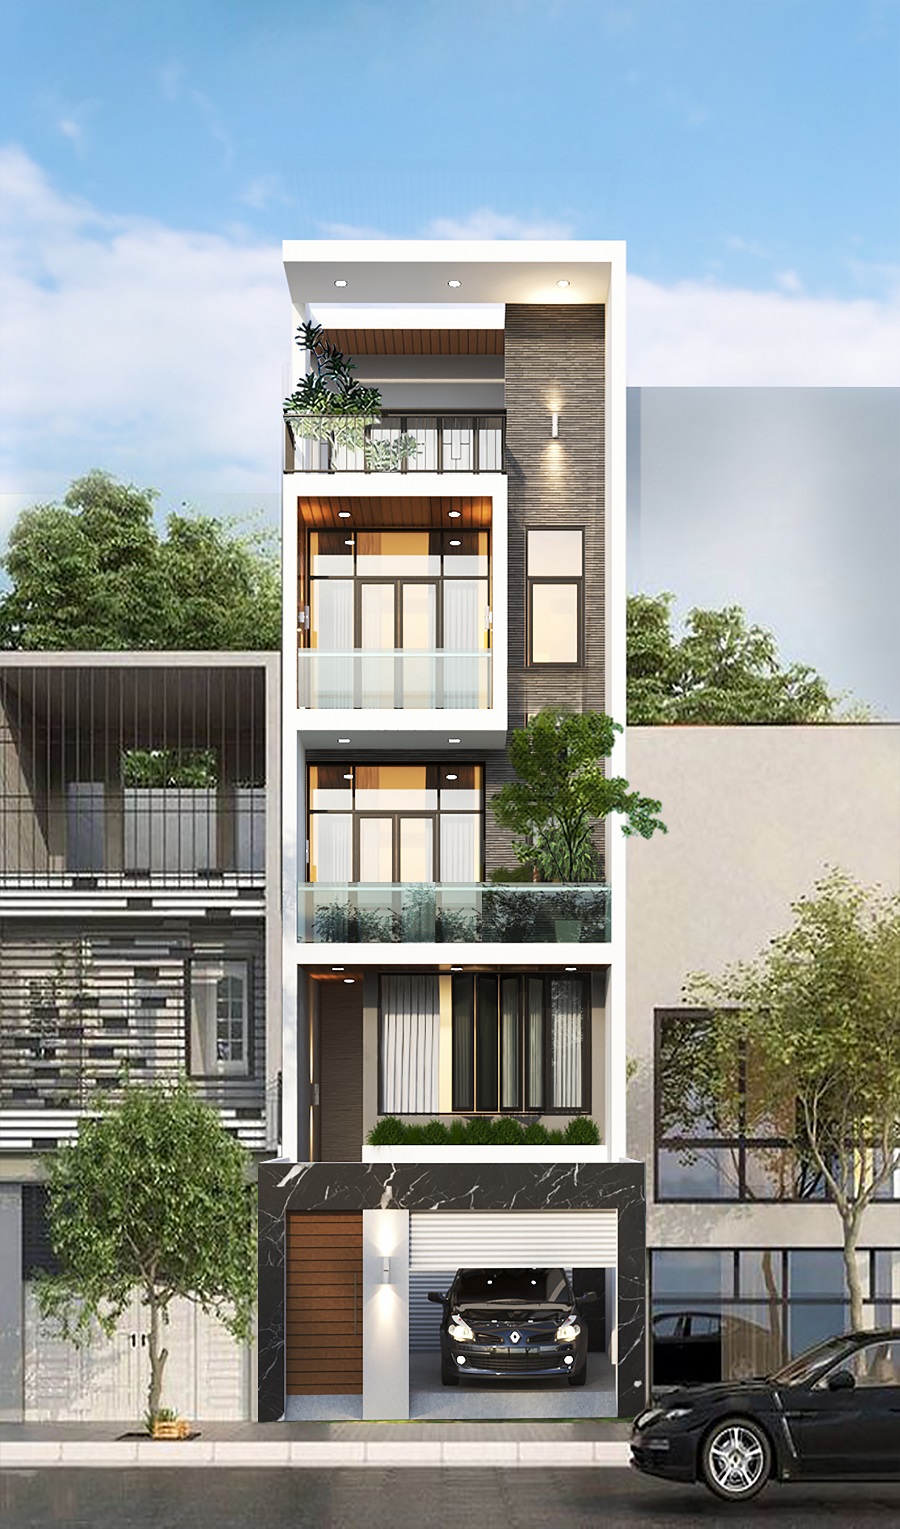 Được thiết kế độc quyền với phong cách sang trọng, chúng tôi tự hào giới thiệu mẫu nhà phố đẹp với sân thượng rộng lớn, tạo nên không gian sống đẳng cấp.